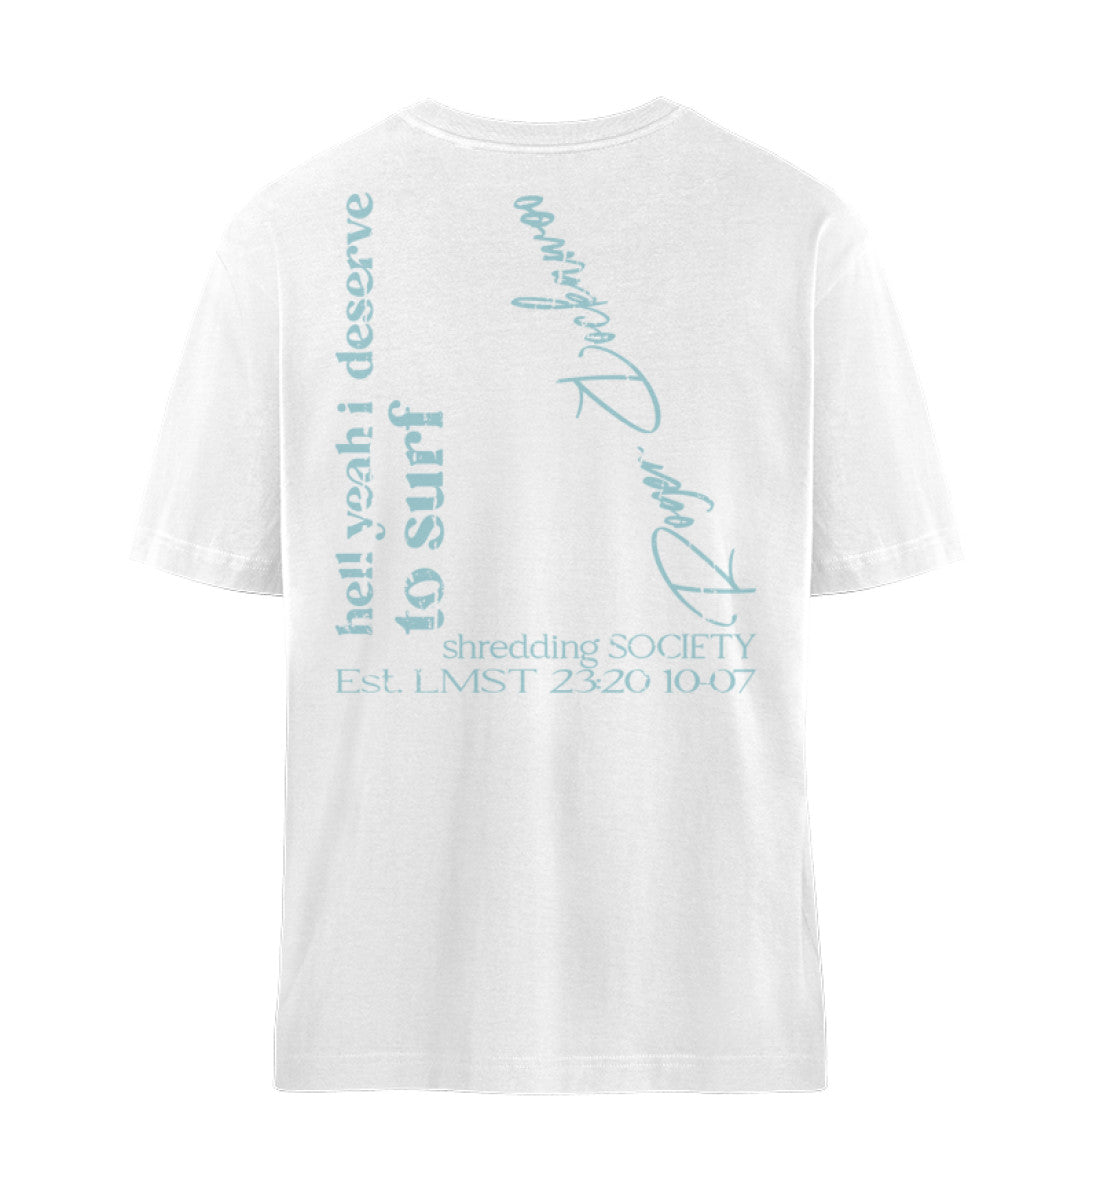 Weißes T-Shirt Unisex Relaxed Fit für Frauen und Männer bedruckt mit dem Design der Roger Rockawoo Kollektion Hell Yeah Surf